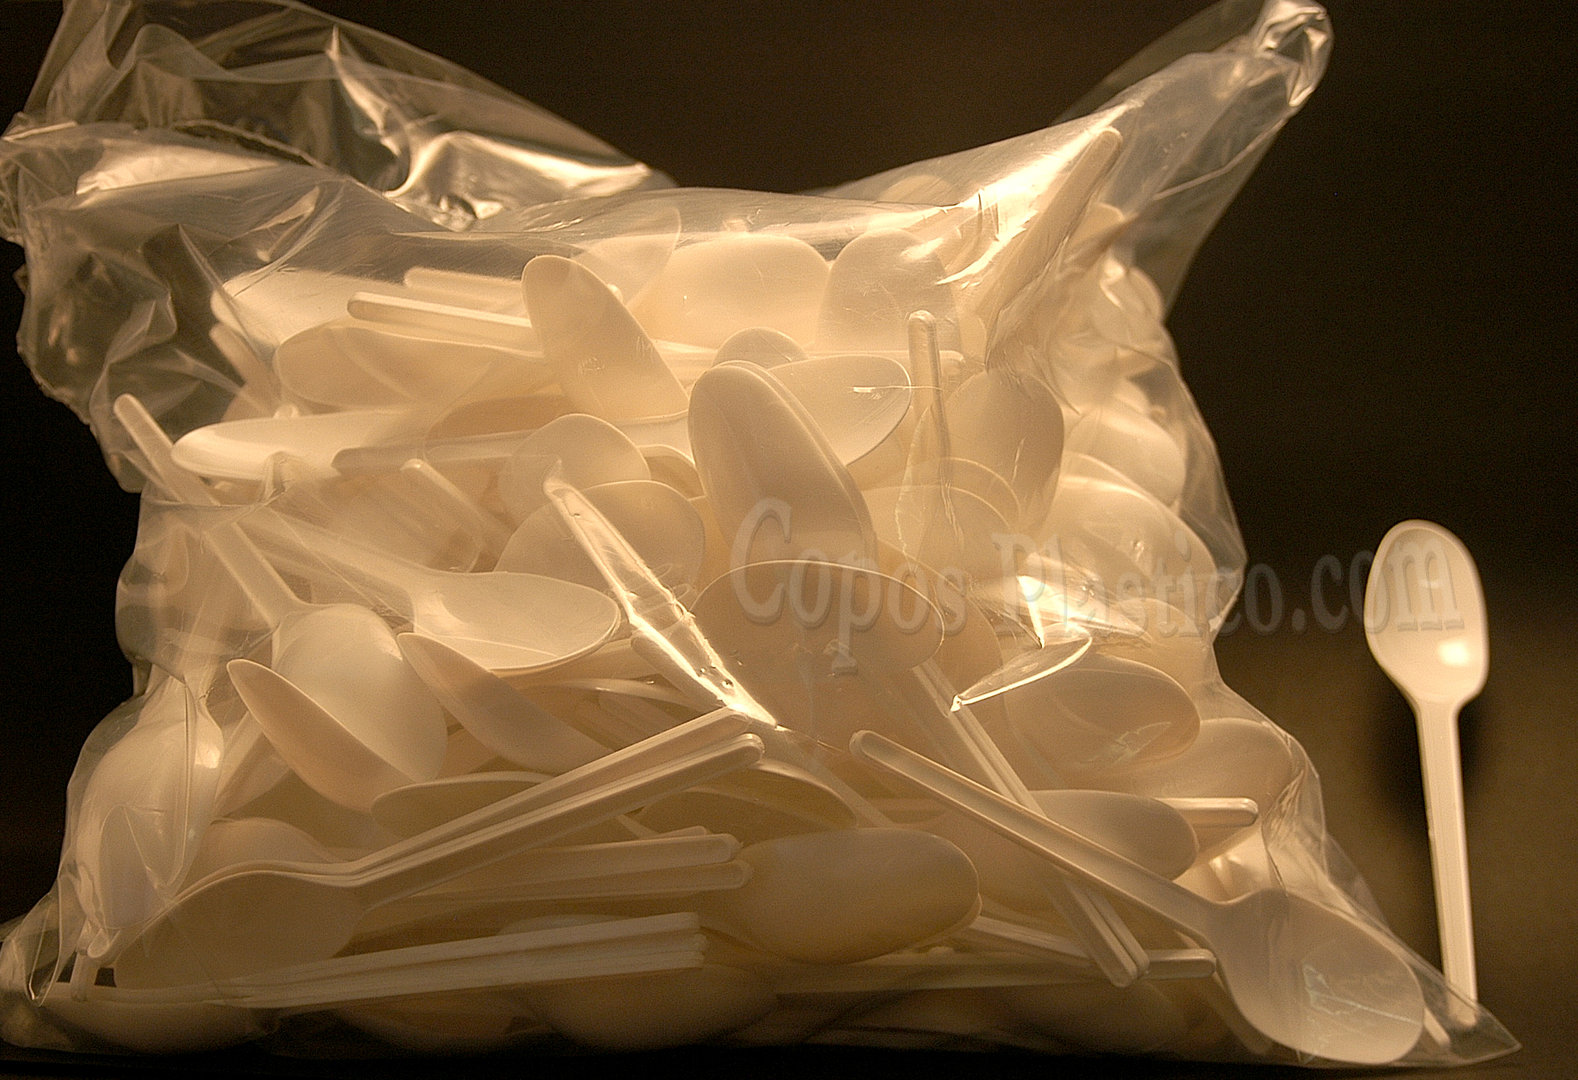 Lot de 10 grandes cuillères Picnik blanches incassables en polypropylène -  18 cm - Jour de Fête - Vaisselle Jetable Eco-Responsable - Vaisselle Jetable